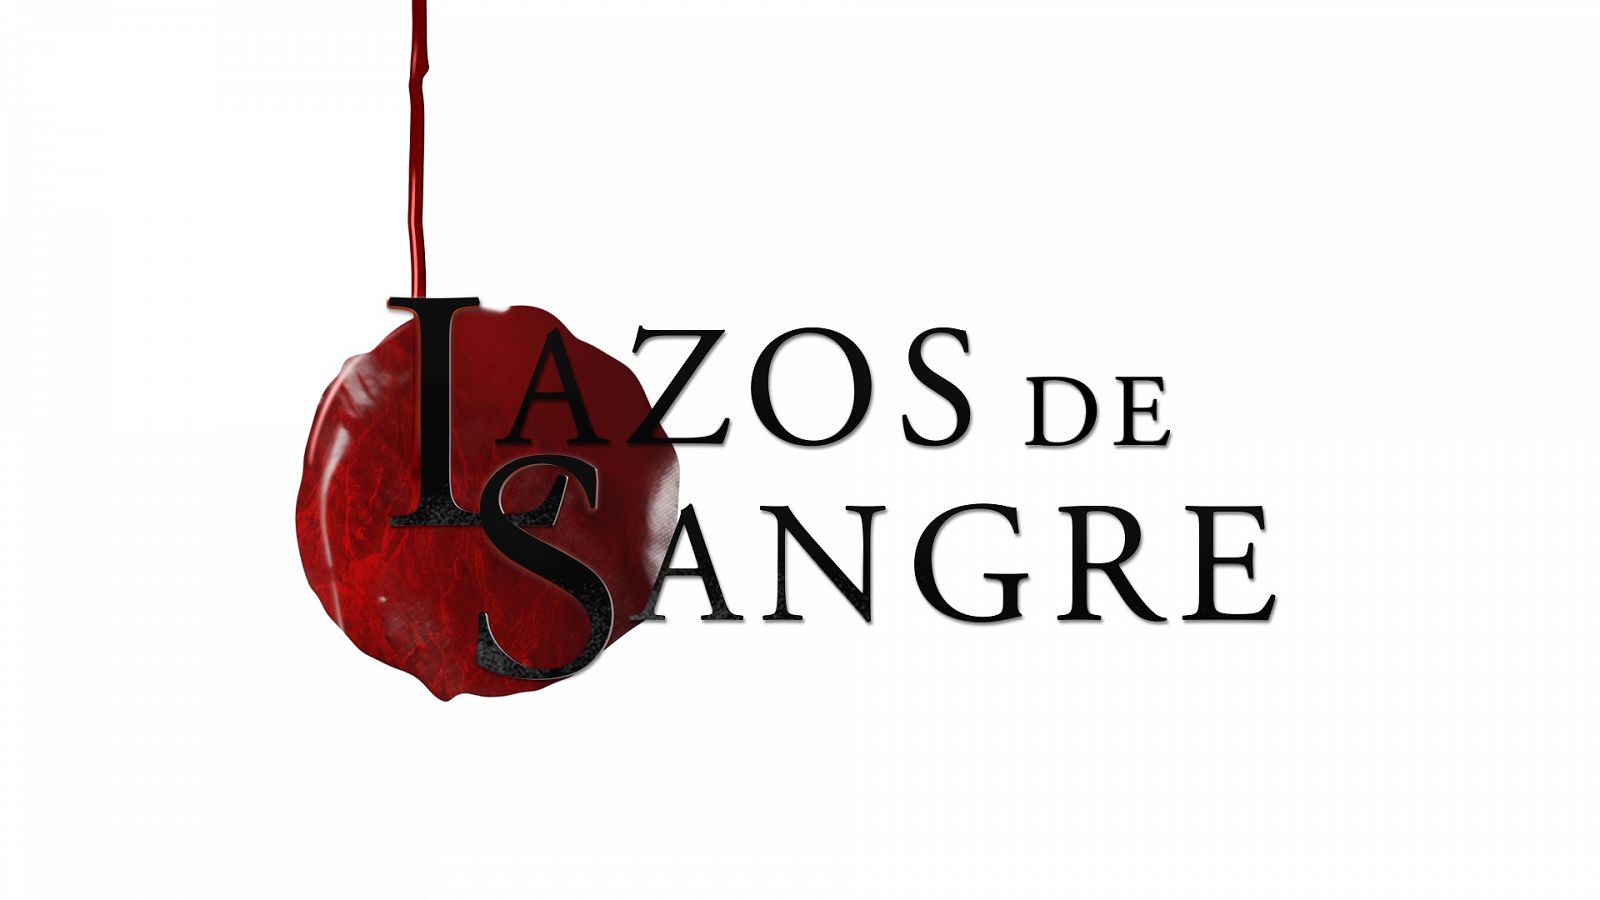 Las sagas más famosas de España vuelven a hablar en Lazos de Sangre